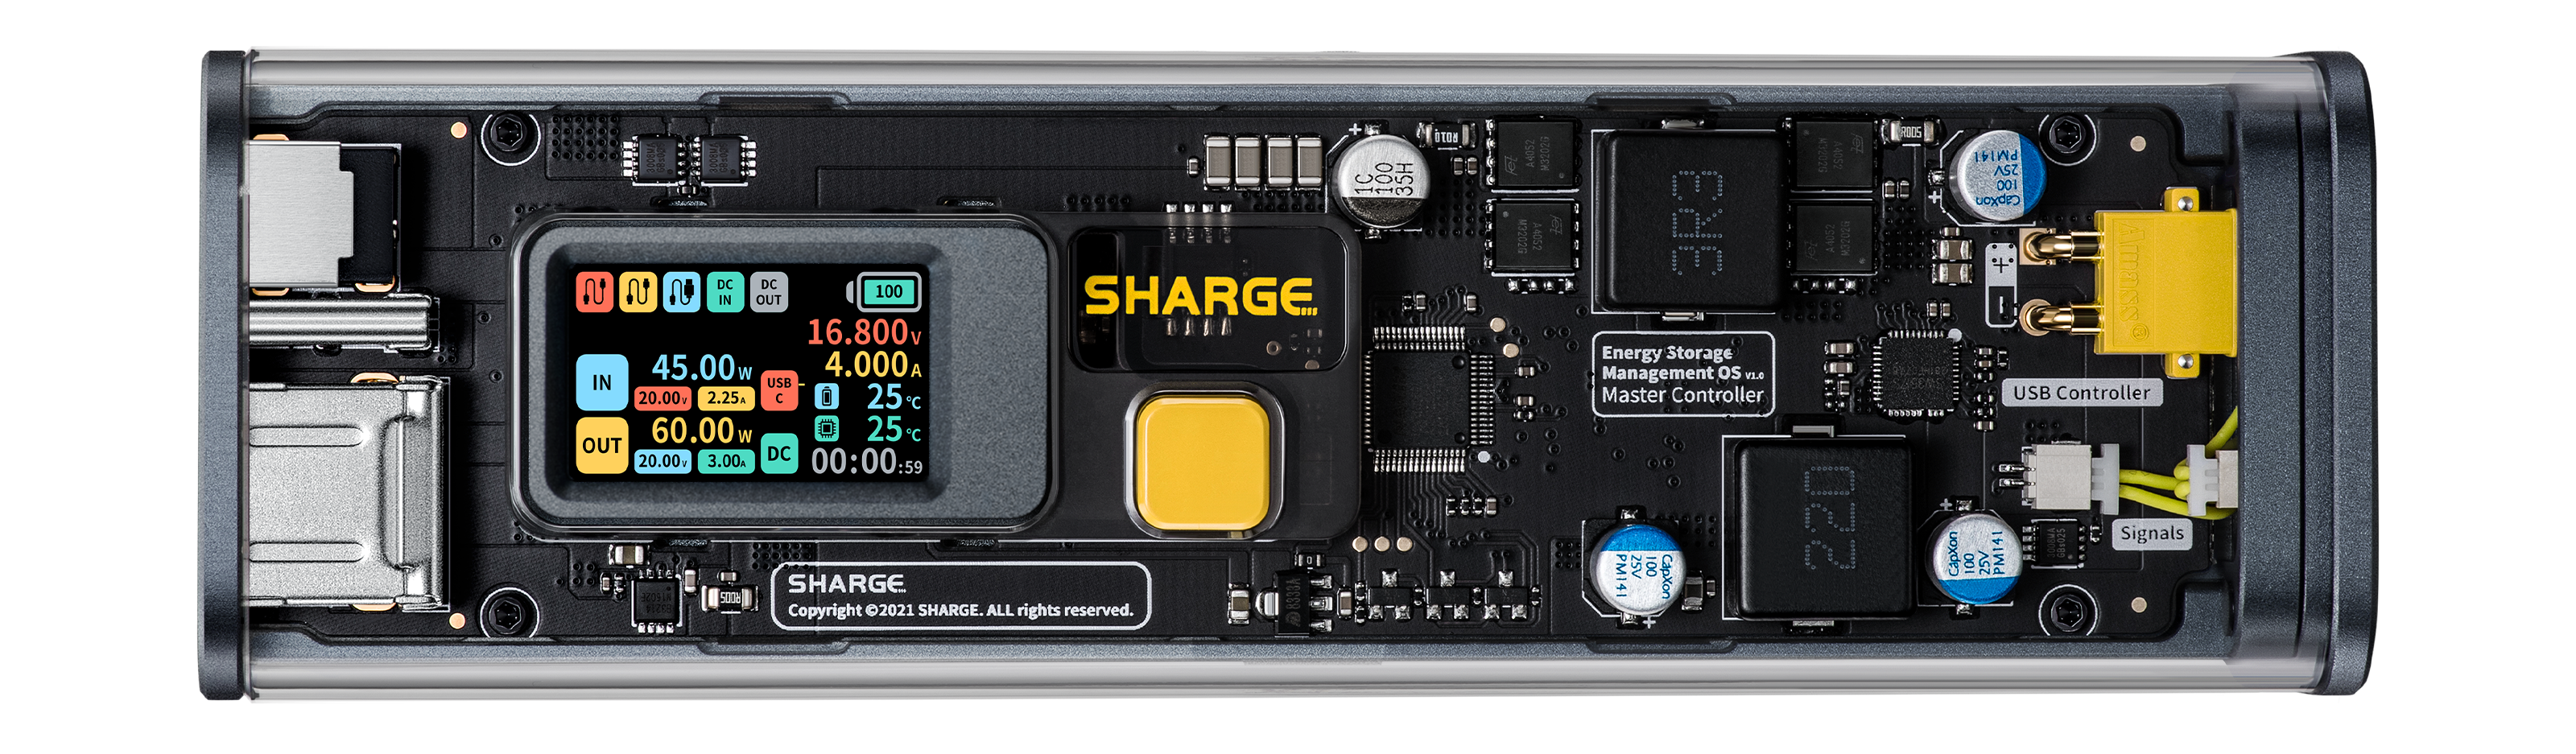 Shargeek Storm 2高速パワーバンク充電器100W透明なポータブル充電器 ...